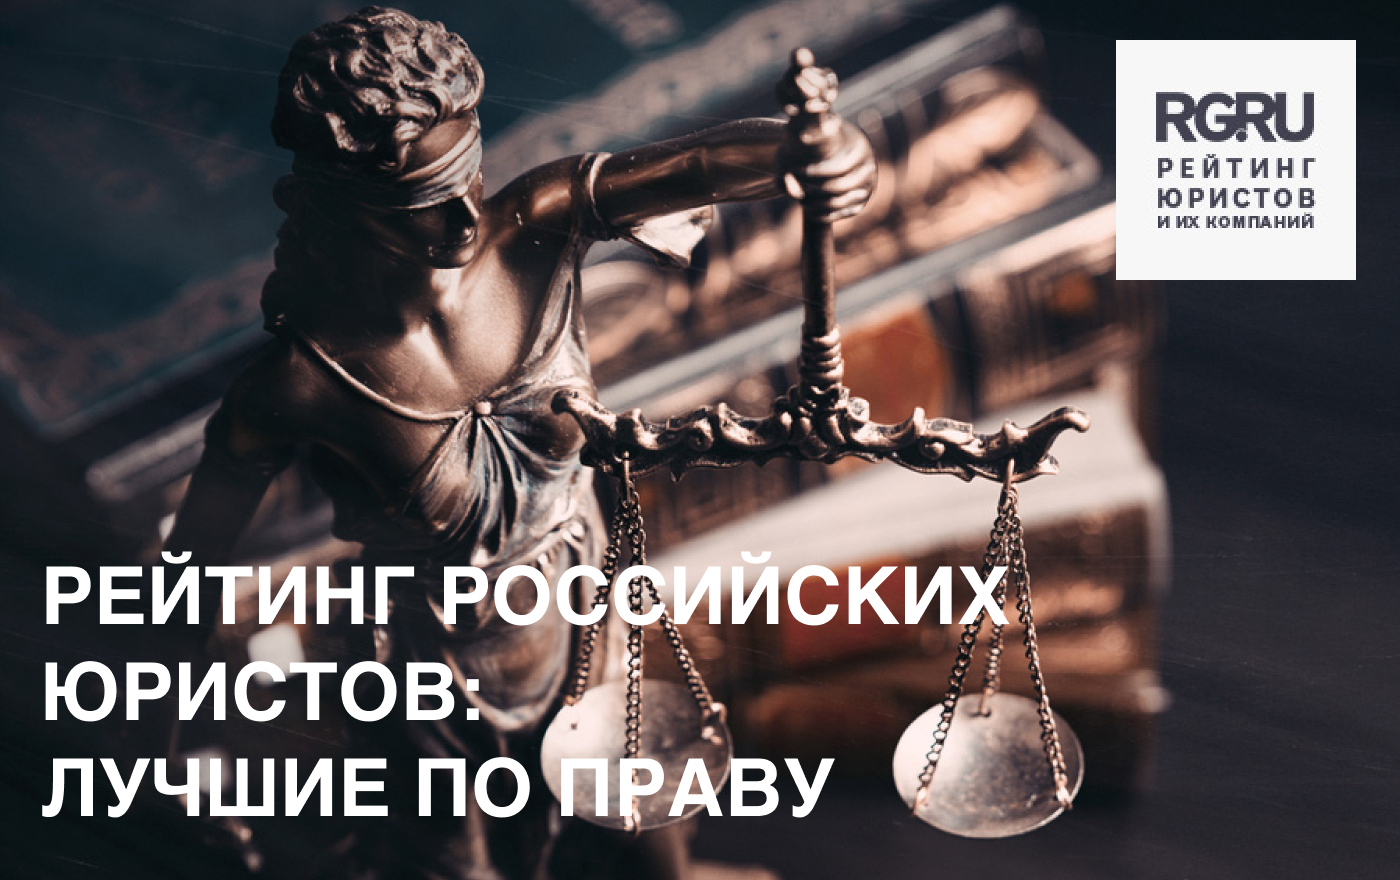 «Российская газета» включила юристов МКА «Николаев и партнеры» в группу: Отличные специалисты, достойные всяческой рекомендации